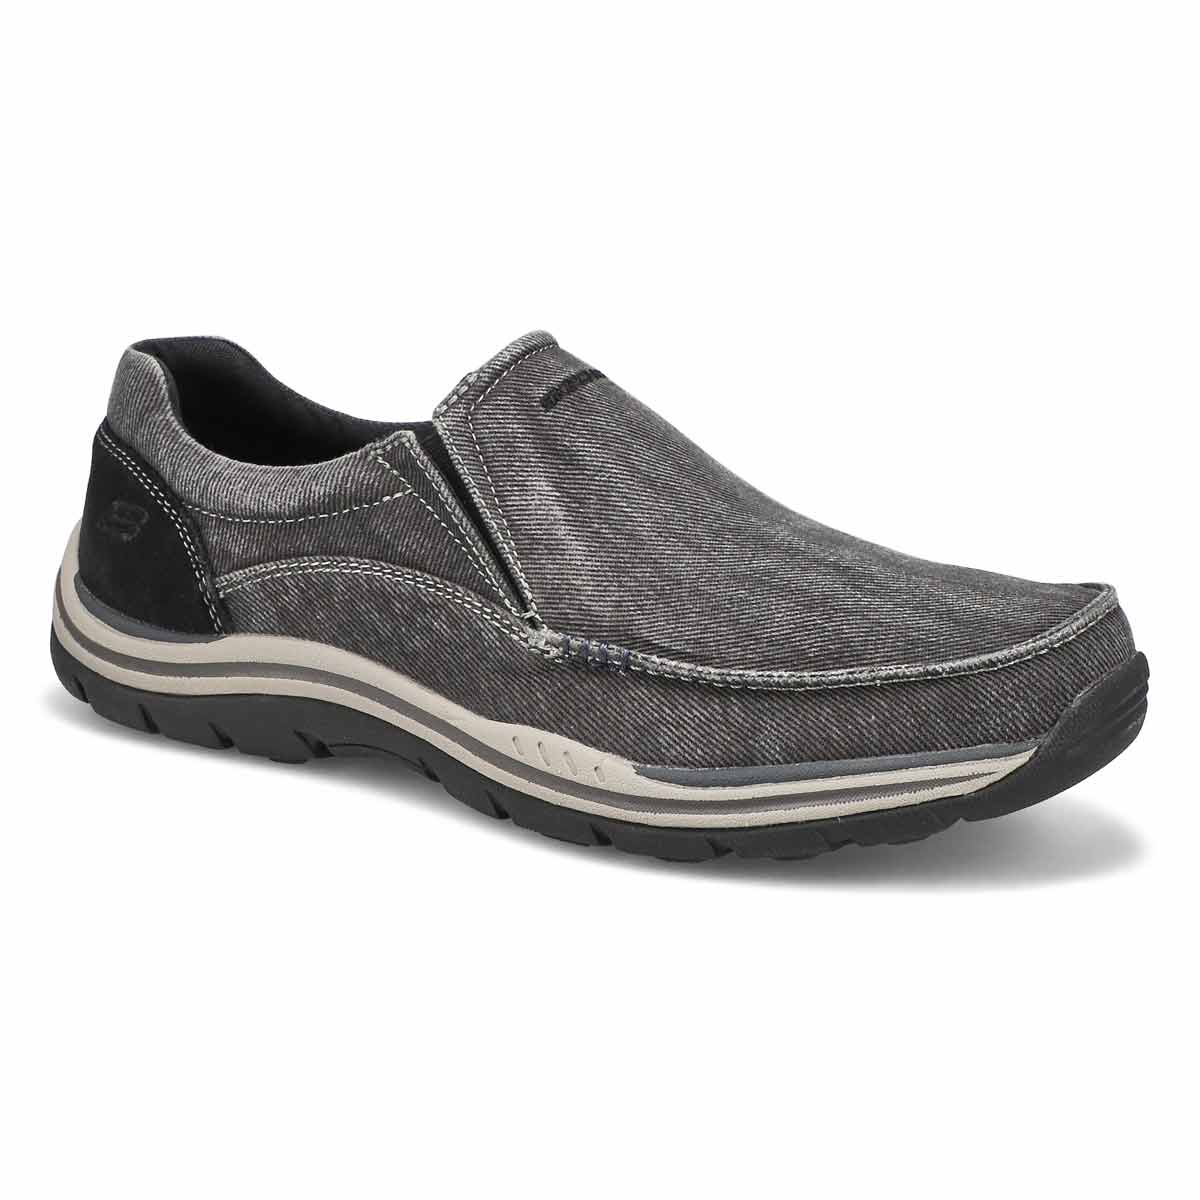 Skechers Men's Expected Avillo Slip On Casual Shoe | eBay